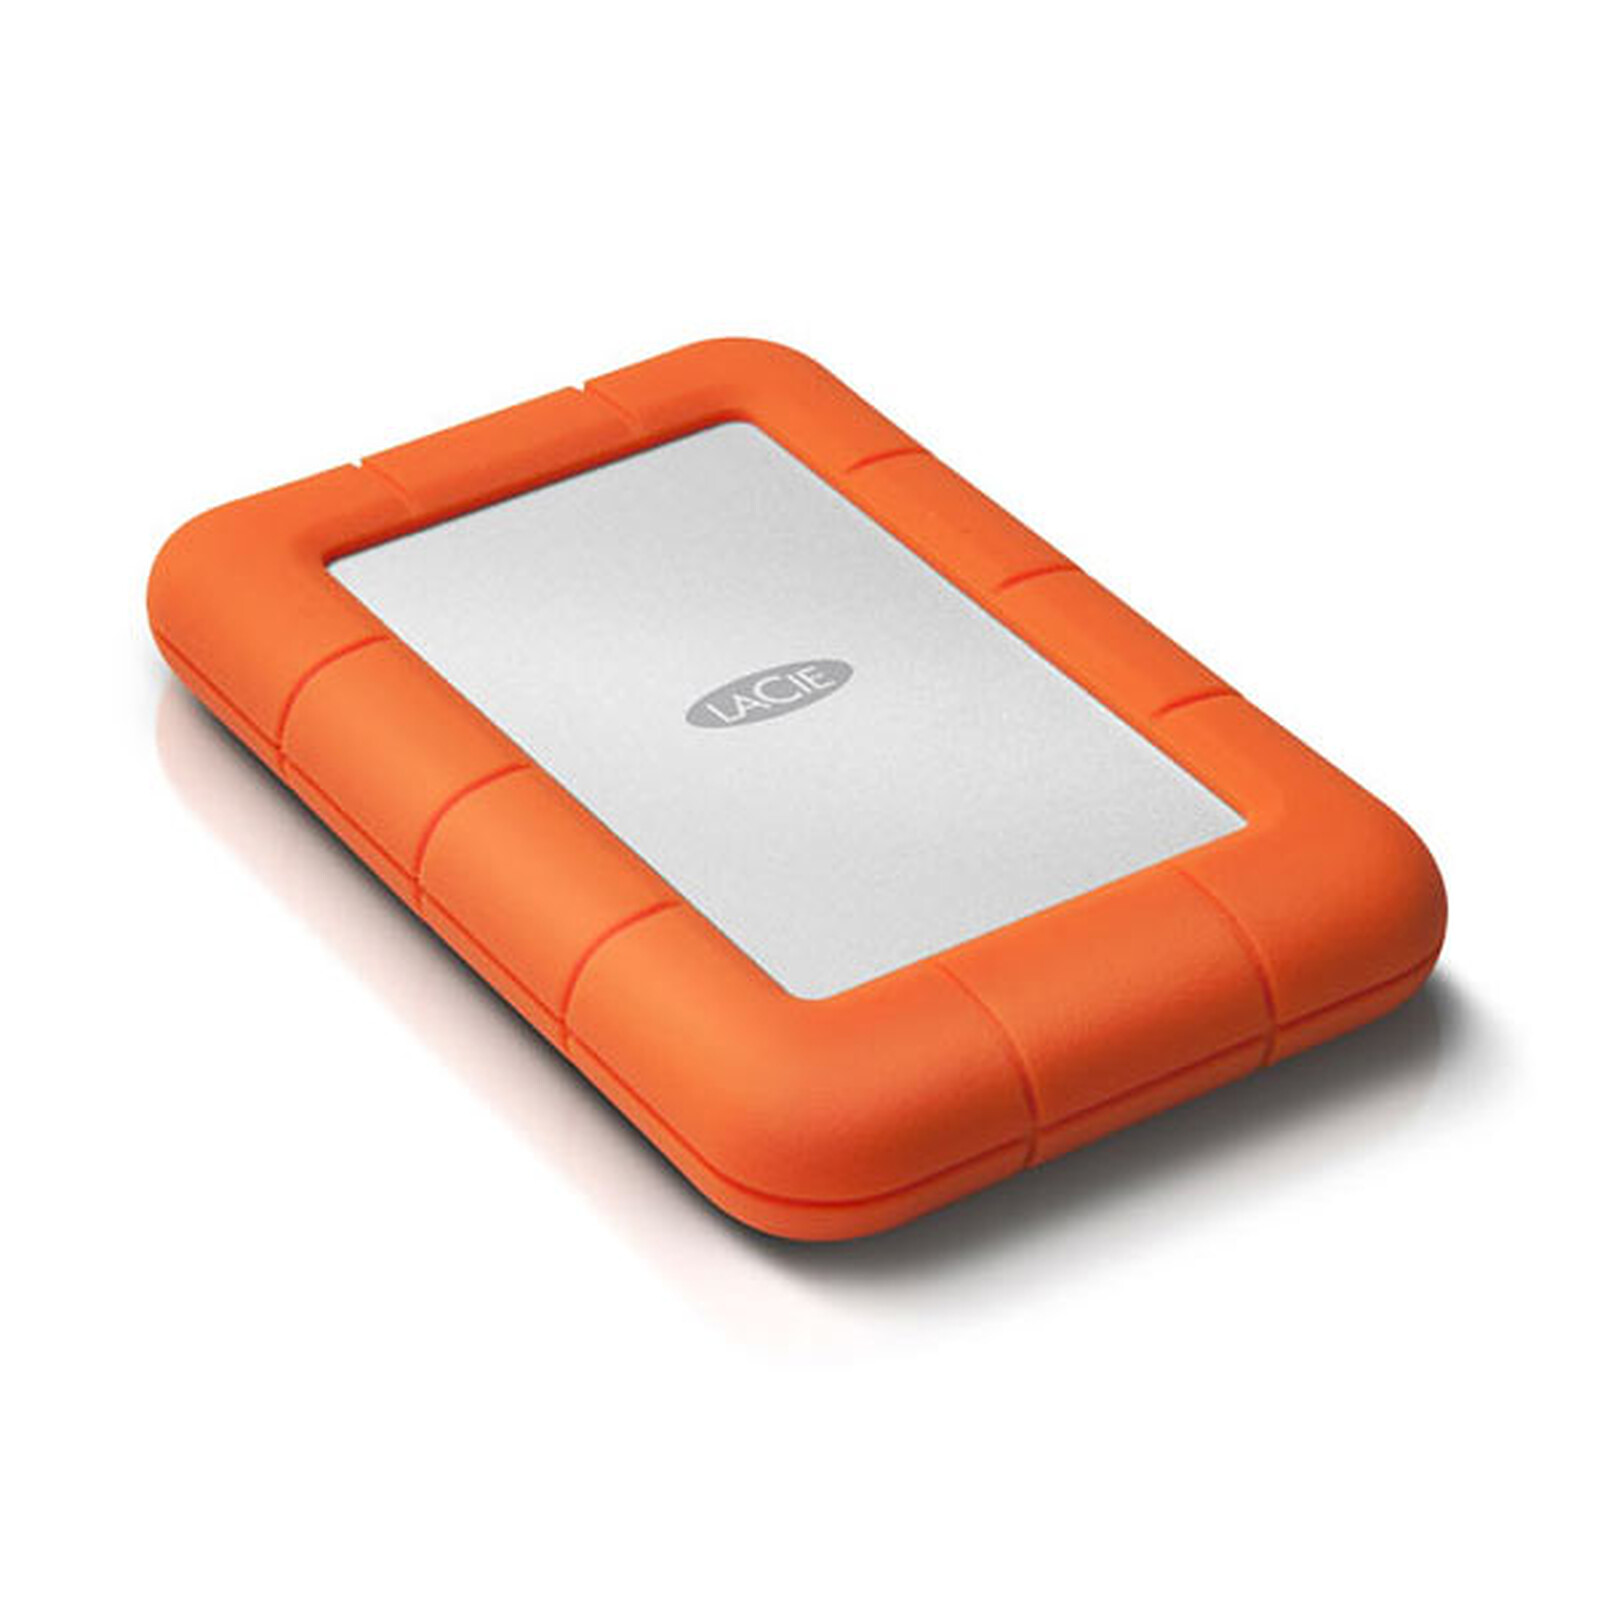 LaCie Rugged Mini 5Tb (USB 3.0) External hard drive LDLC 3-year warranty